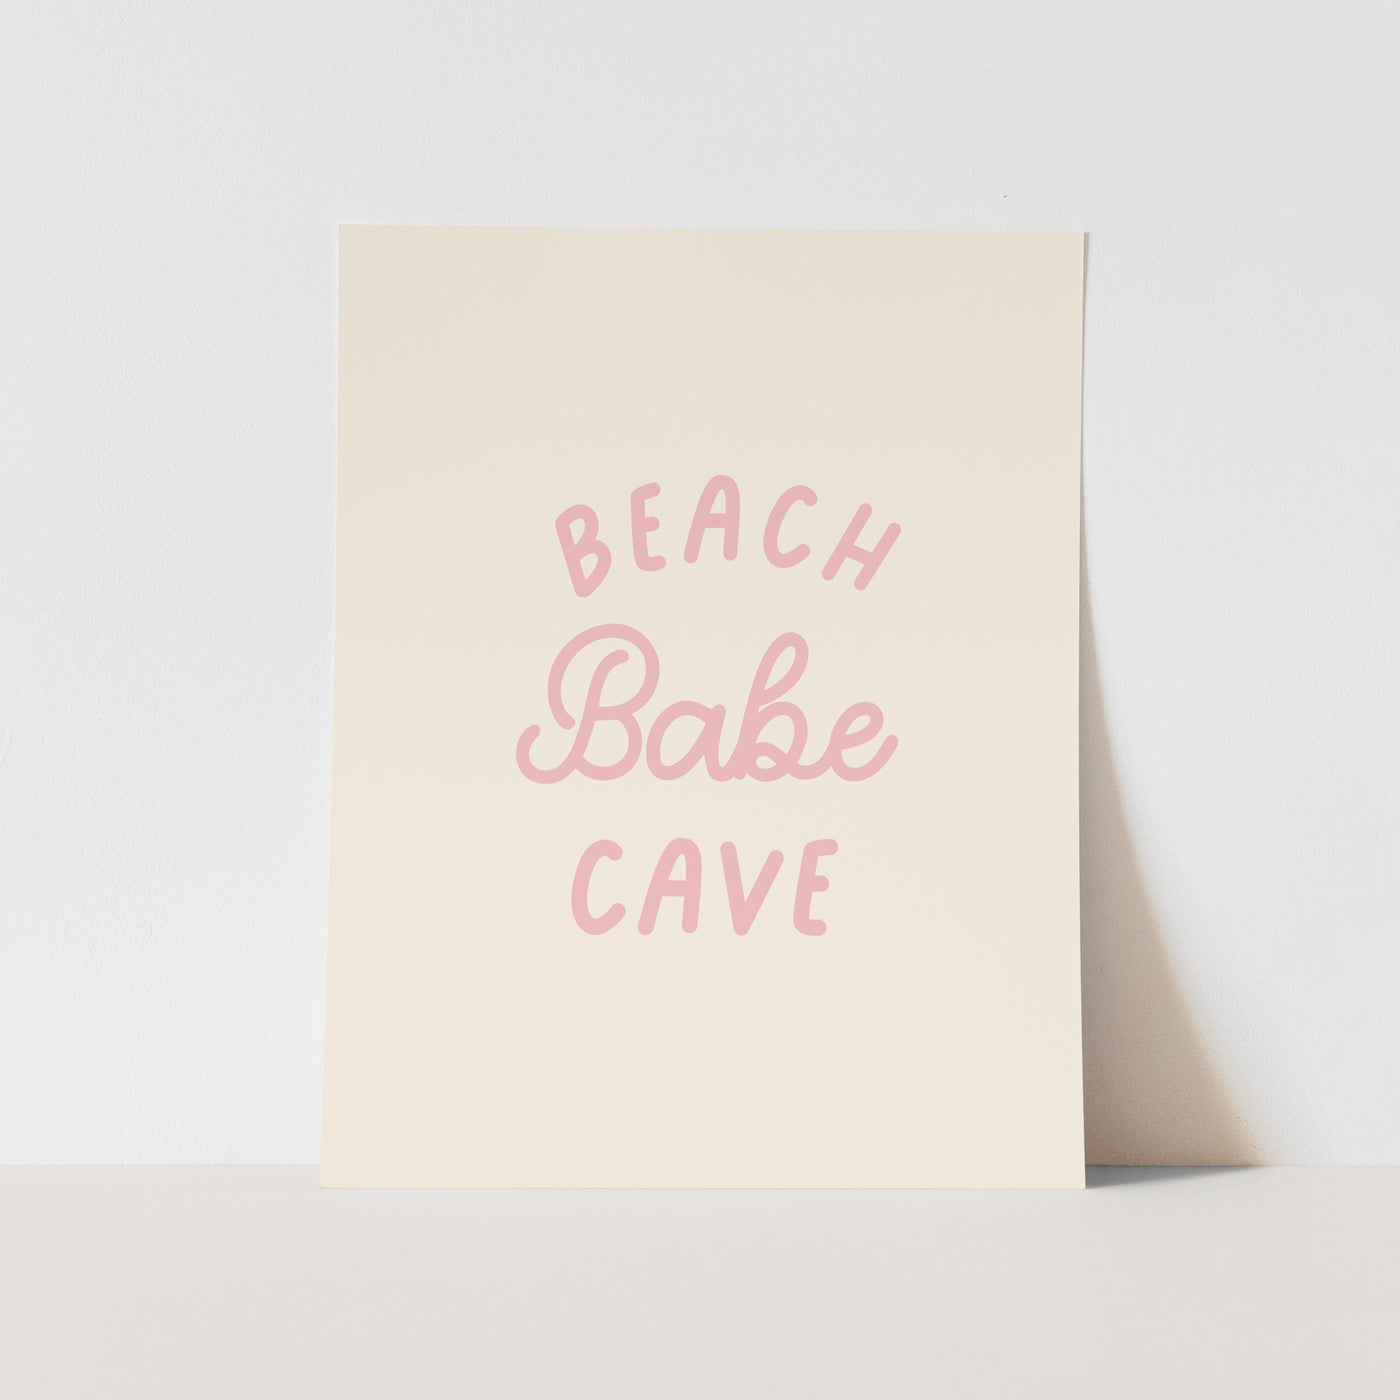 Art Print: Beach Babe Cave